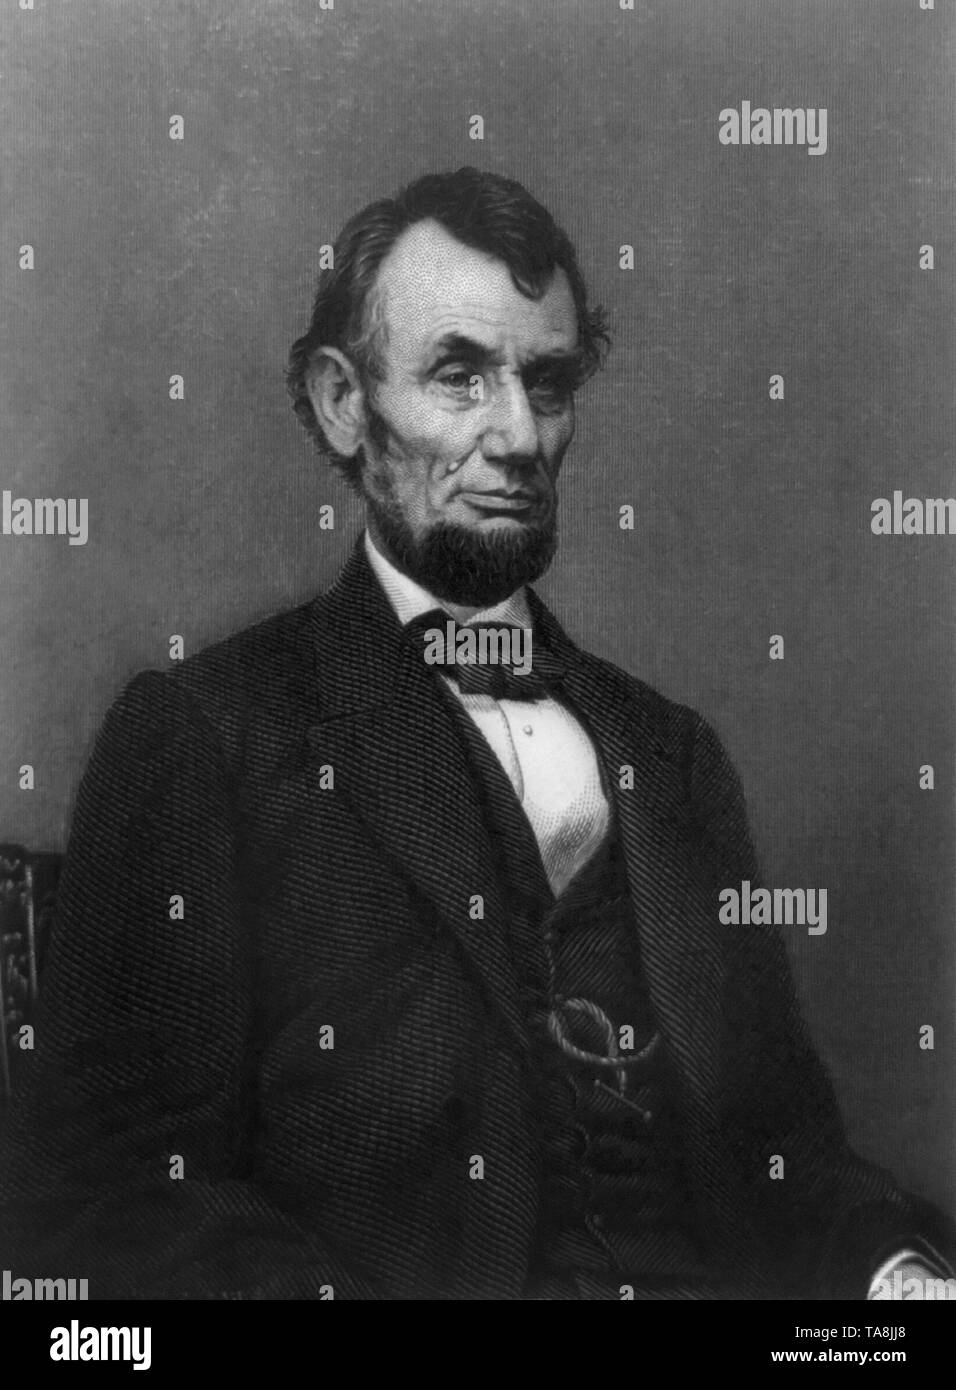 Mezza lunghezza ritratto del Presidente degli Stati Uniti Abraham Lincoln, incisione da William G. Jackman da una fotografia da Mathew Brady, 1865 Foto Stock